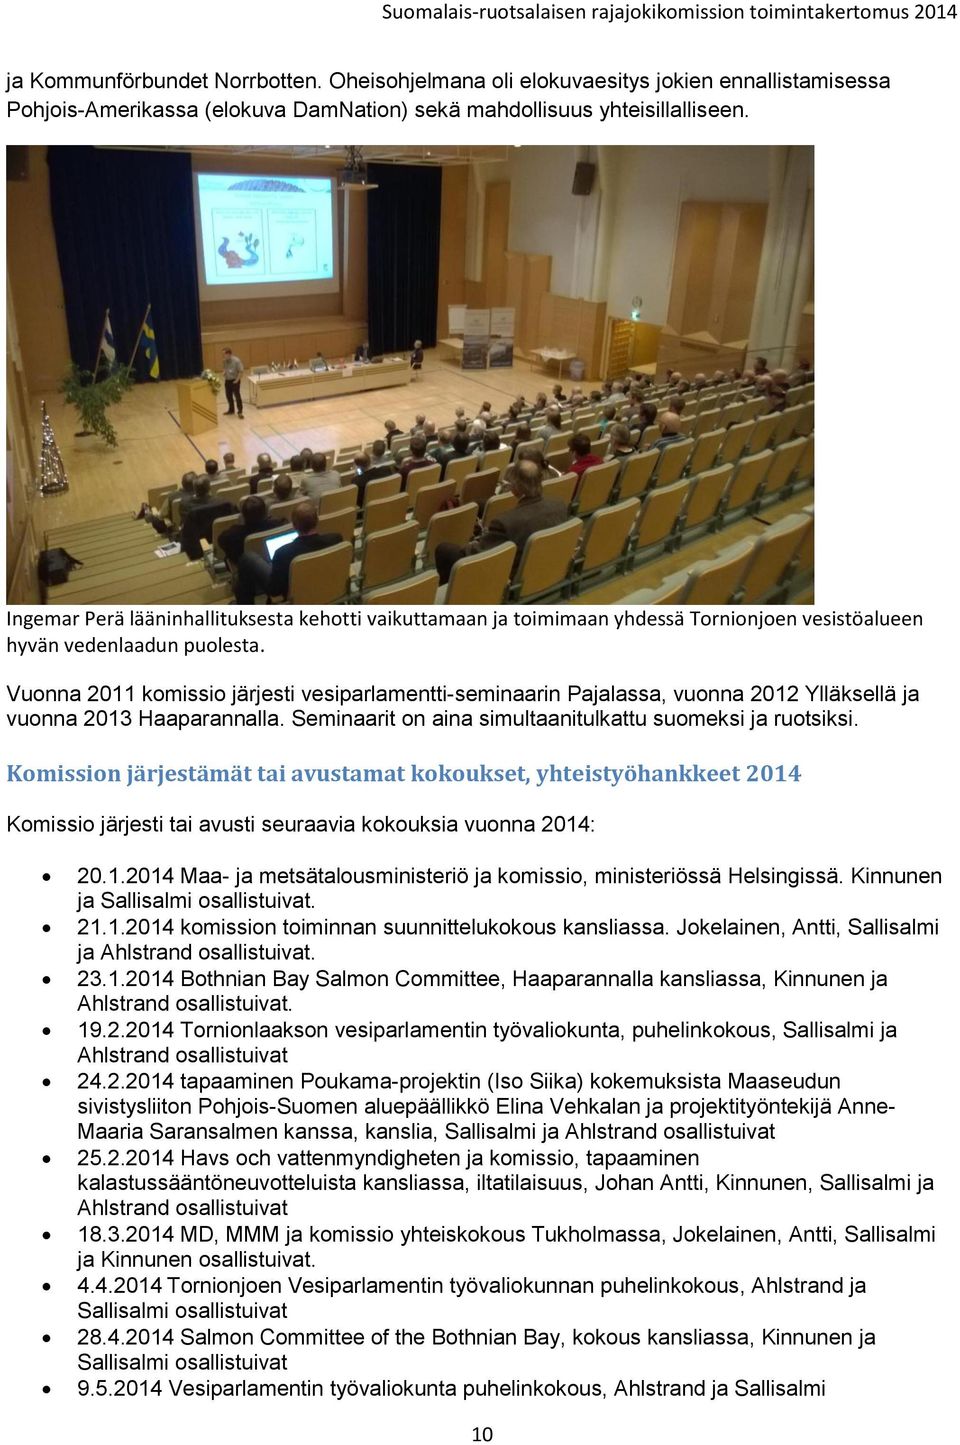 Vuonna 2011 komissio järjesti vesiparlamentti-seminaarin Pajalassa, vuonna 2012 Ylläksellä ja vuonna 2013 Haaparannalla. Seminaarit on aina simultaanitulkattu suomeksi ja ruotsiksi.